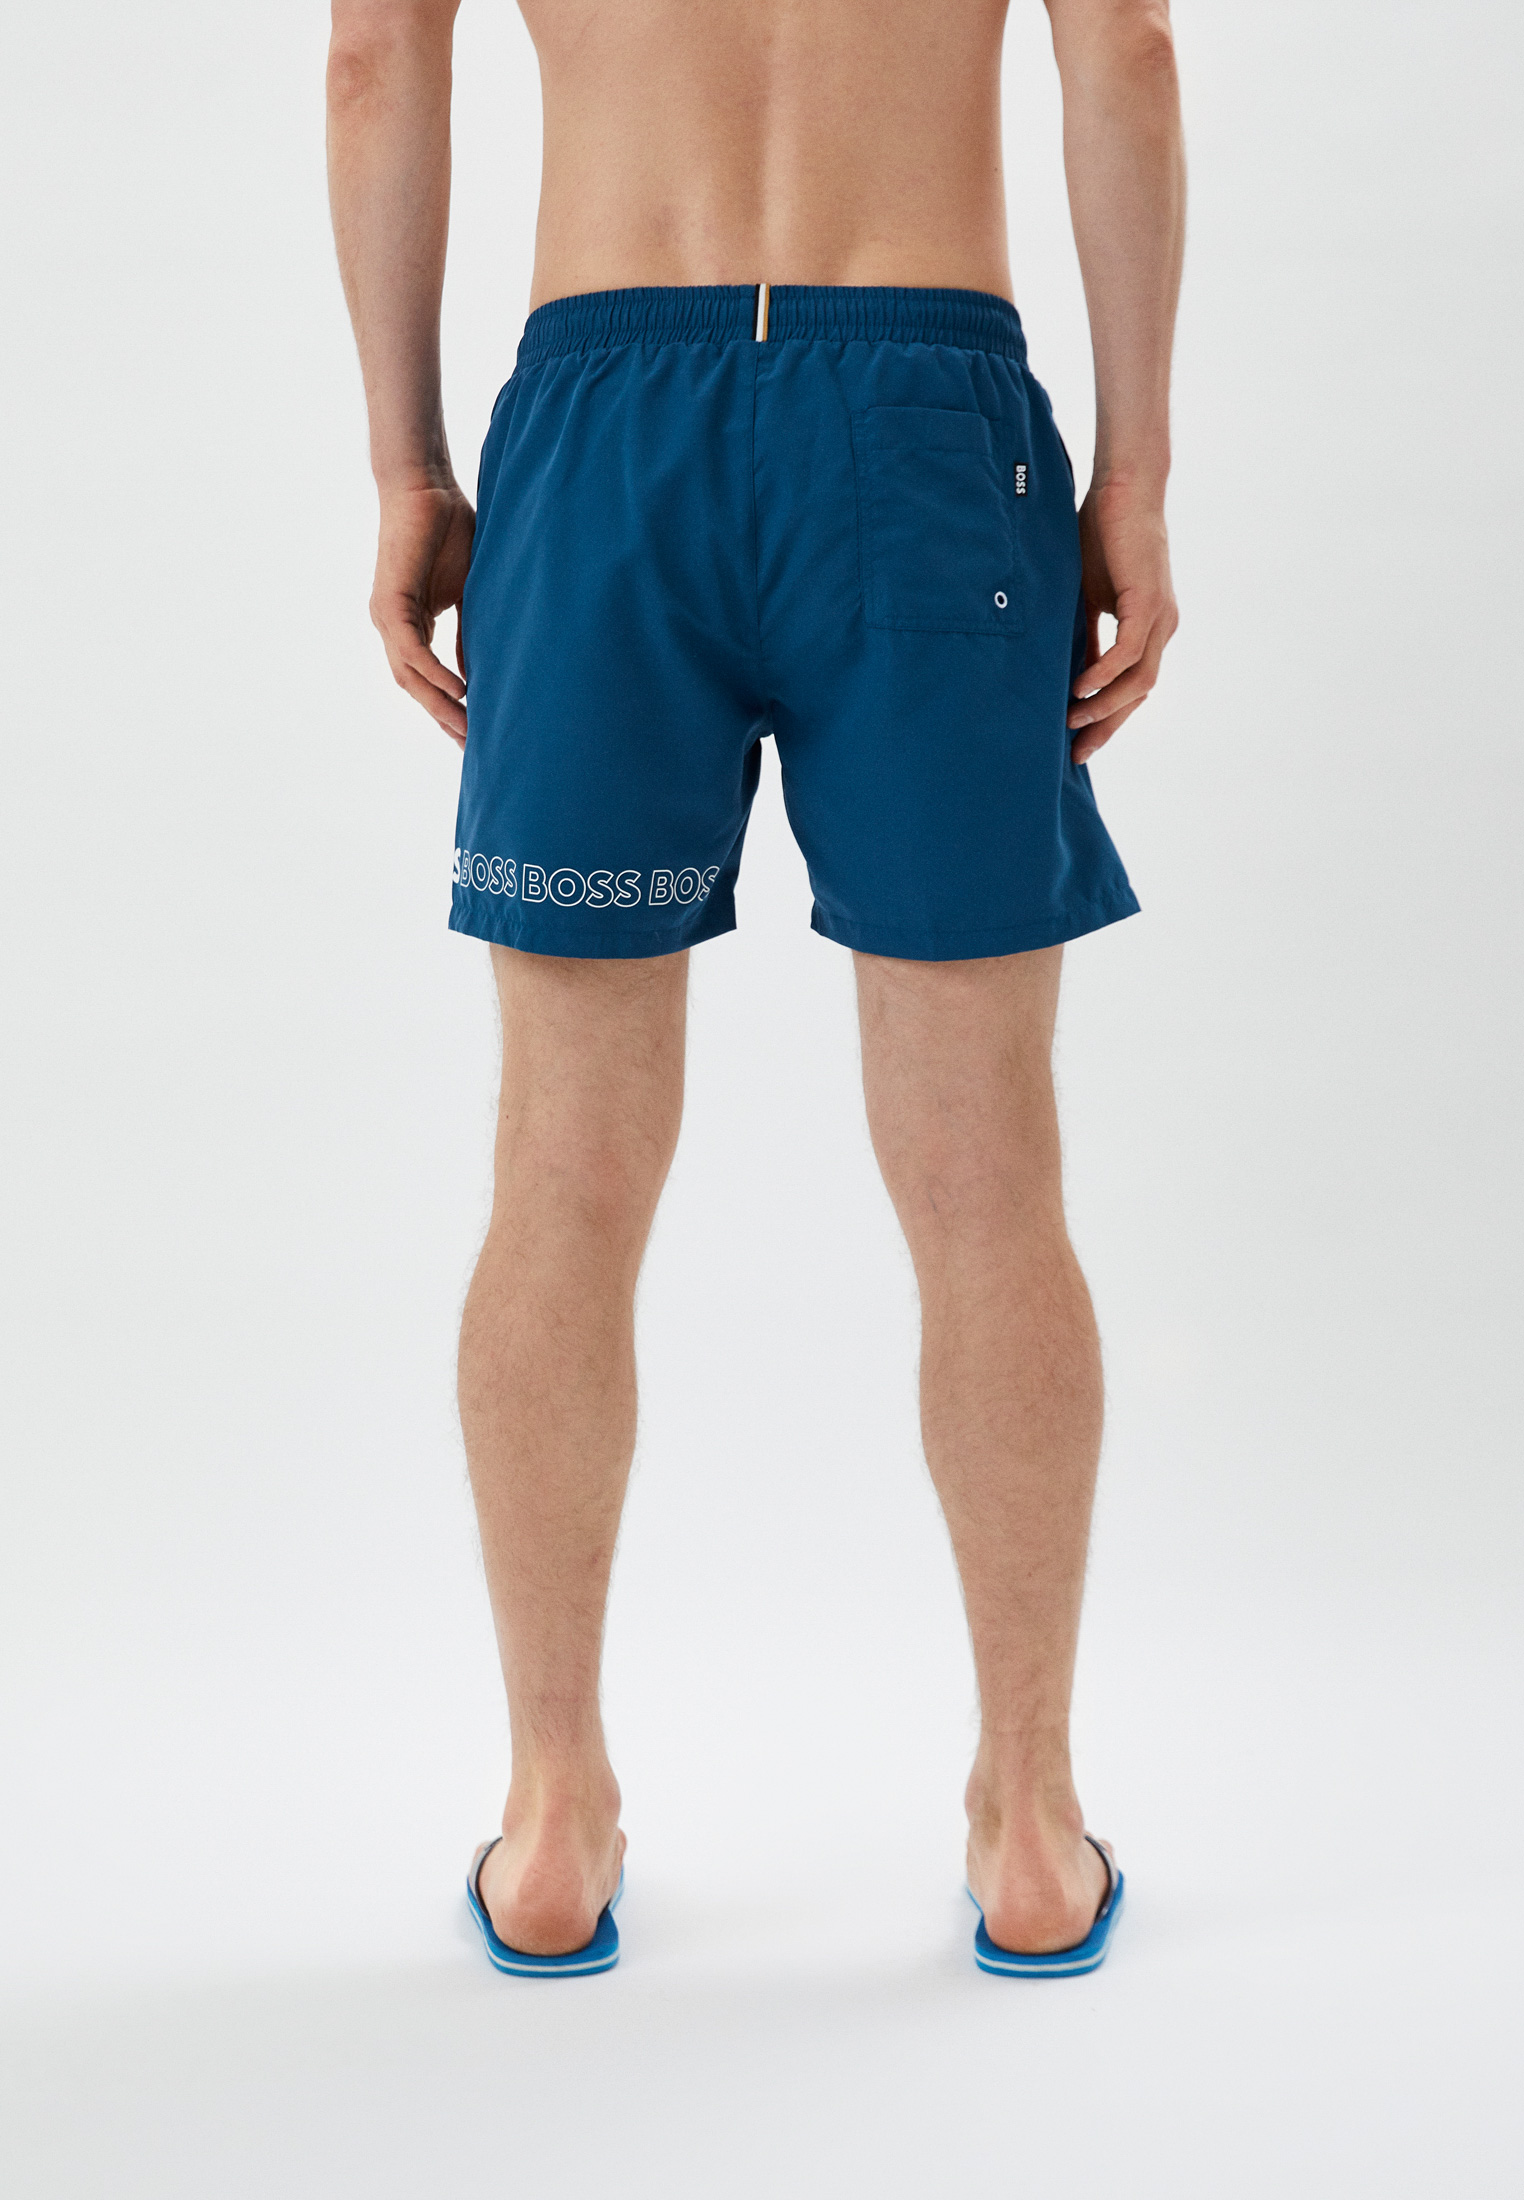 Мужские шорты для плавания Boss (Босс) 50469300: изображение 2